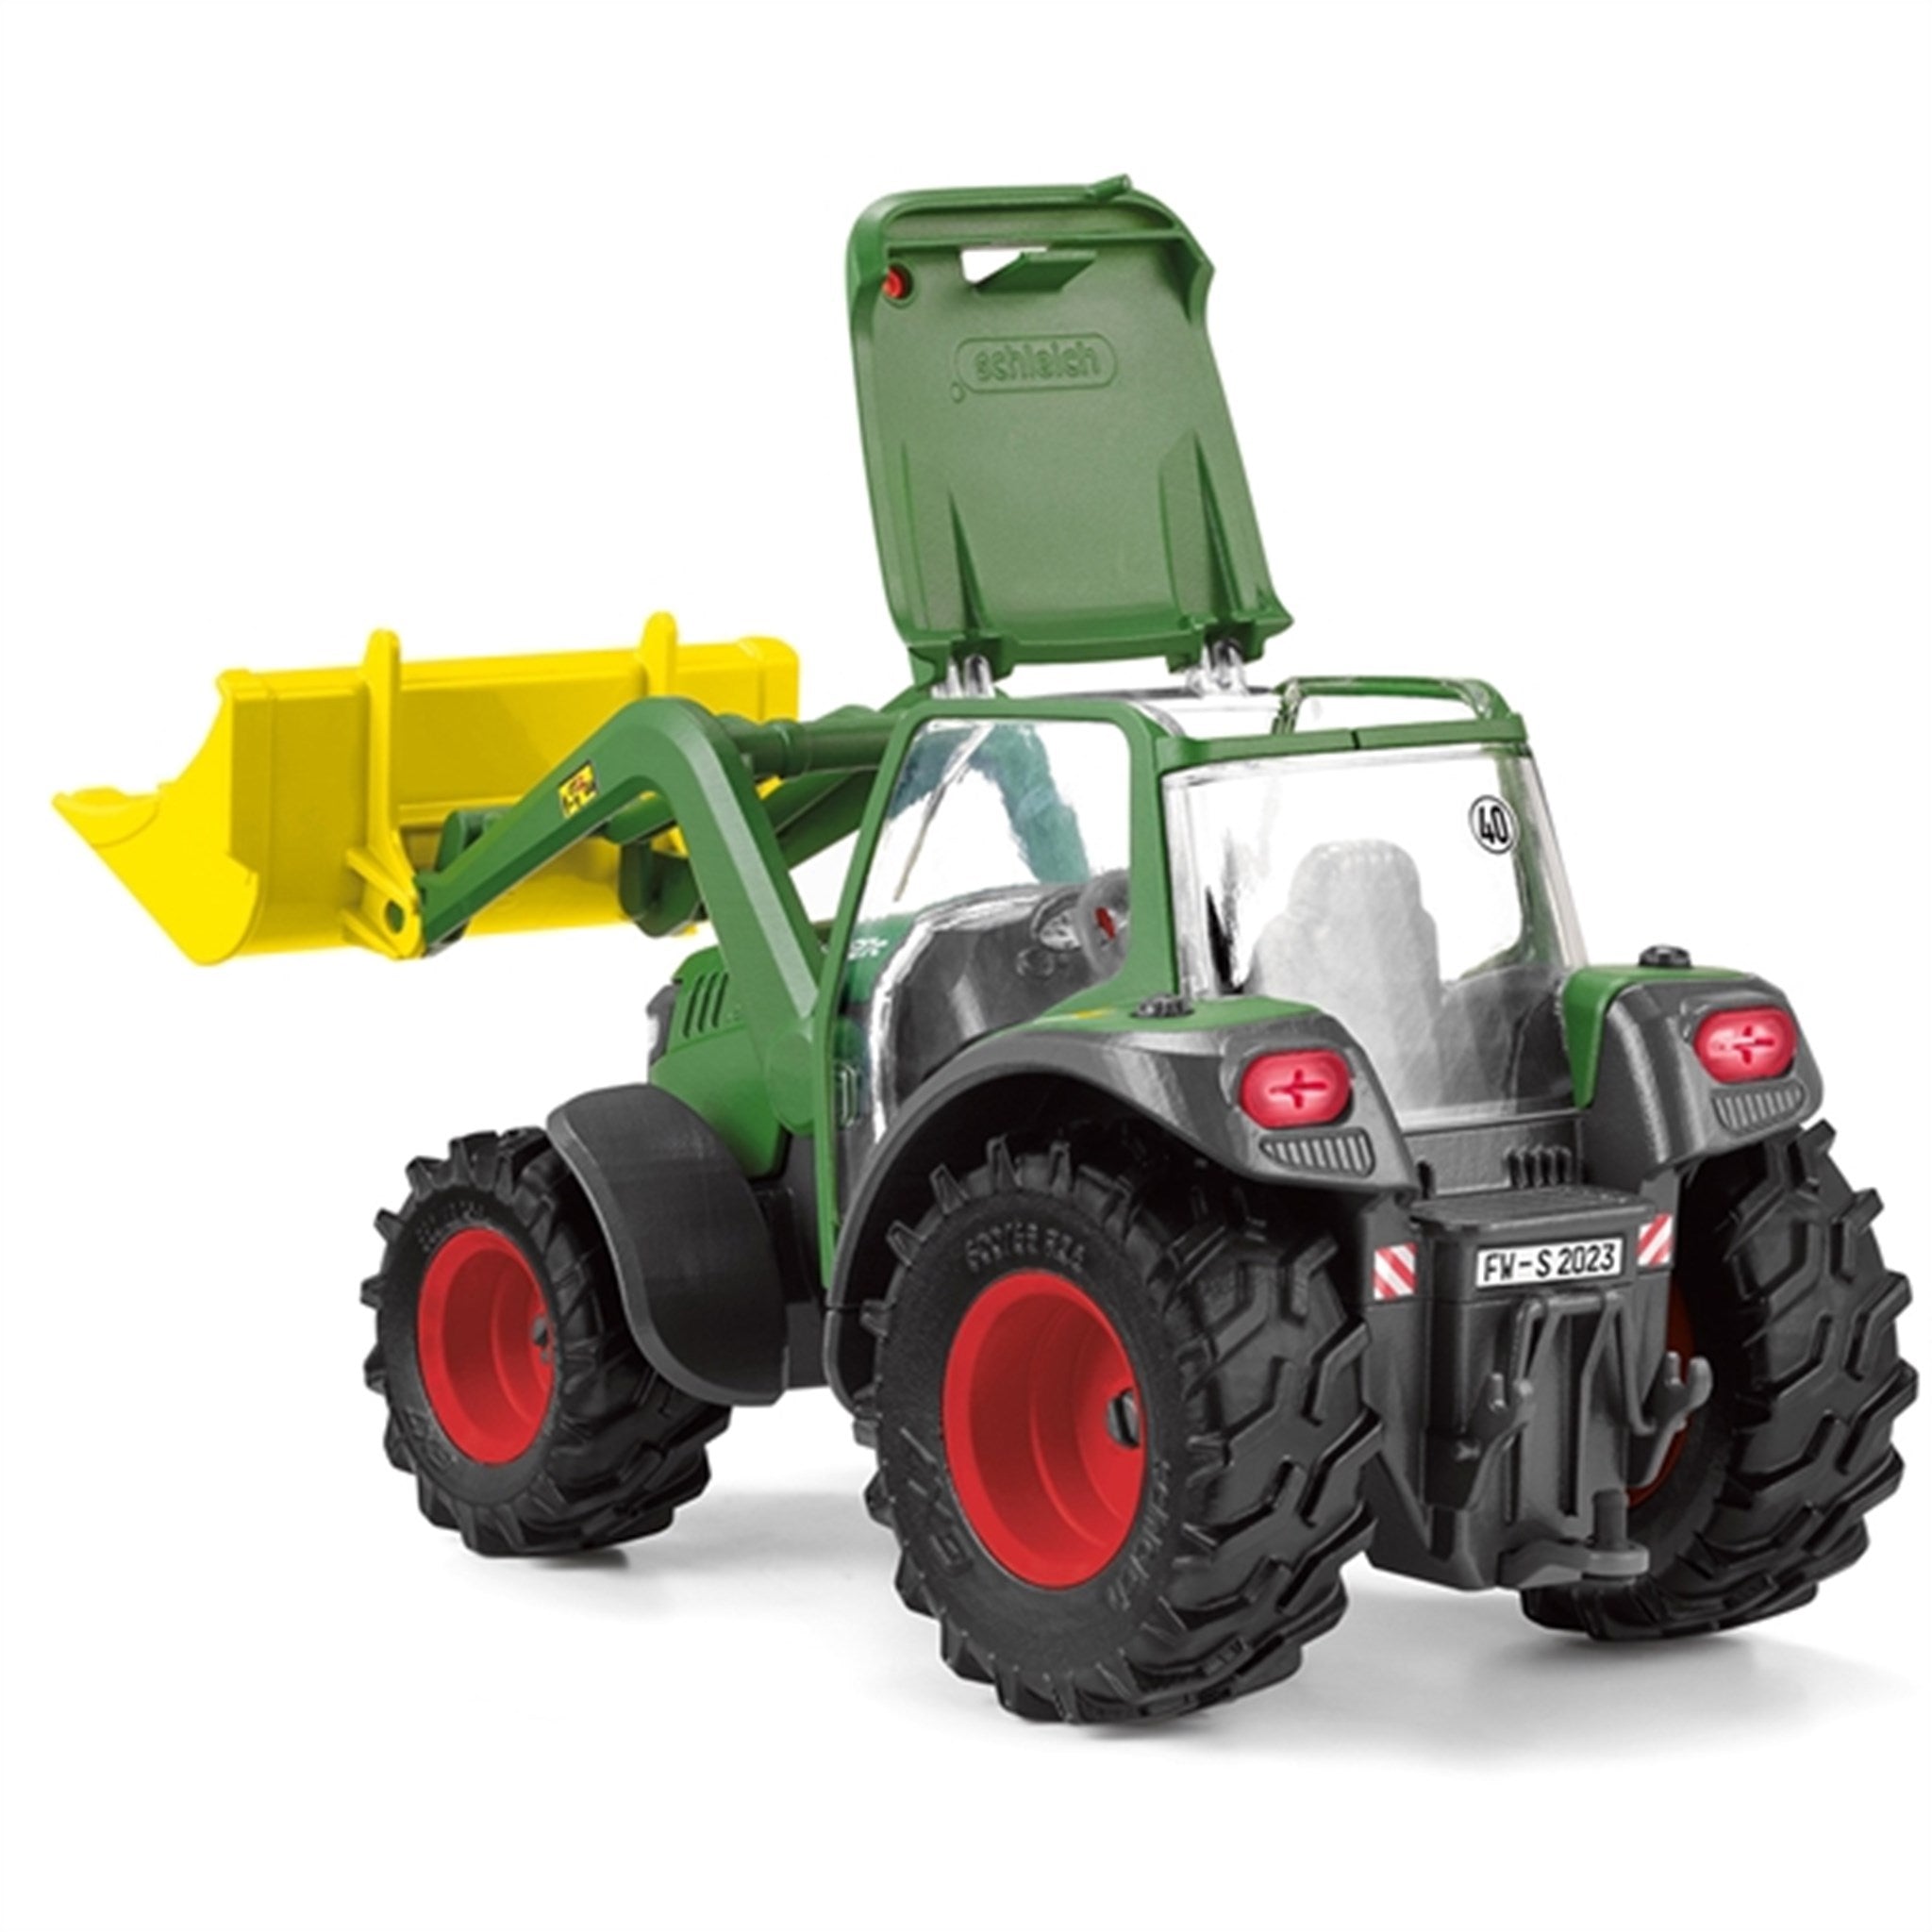 Schleich Farm World Tractor with Trailer 2